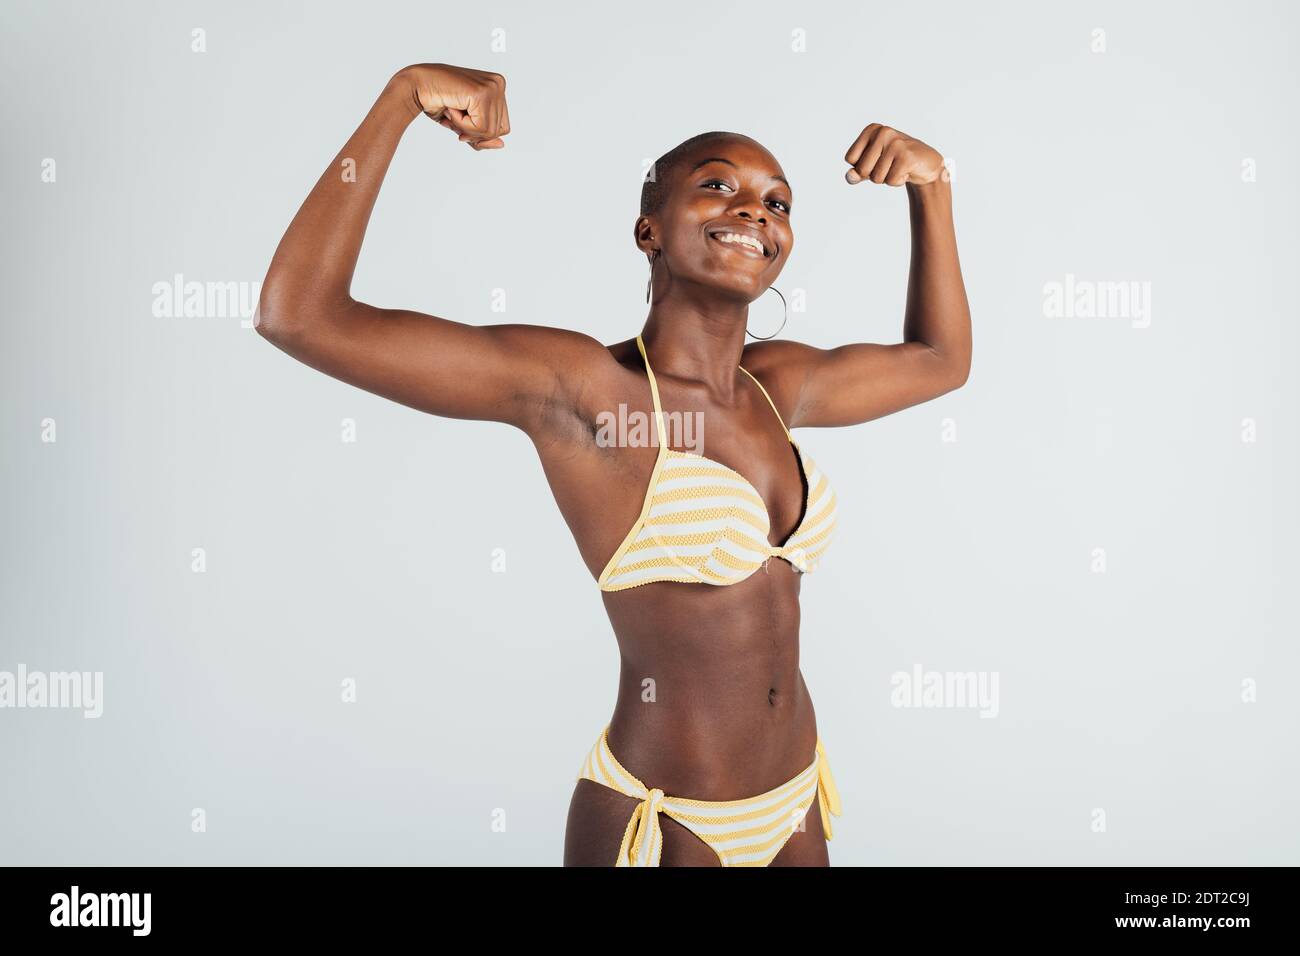 Young woman wearing bikini, flexing muscles Stock Photo